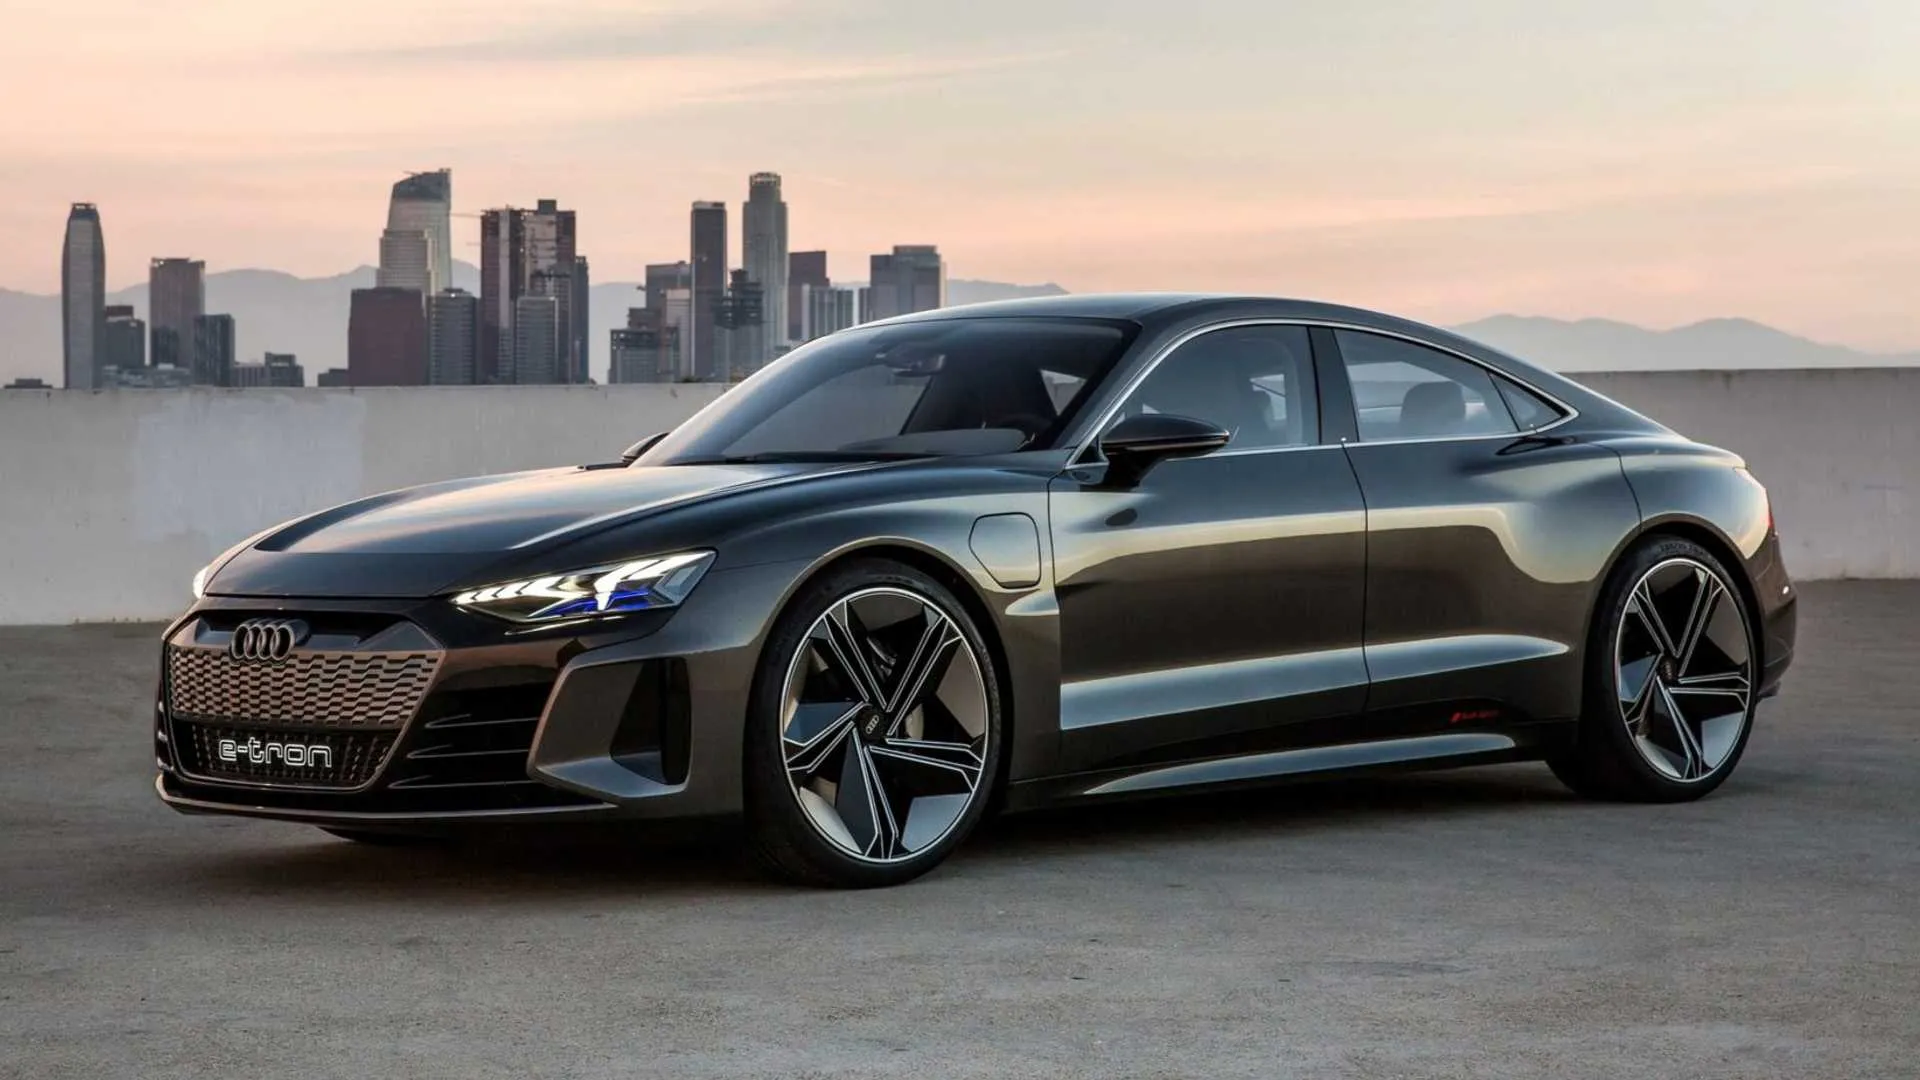 Audi ha lanzado su e-Tron GT, un magnífico auto eléctrico diseñado para competir con Tesla, con un precio base de $100,000.